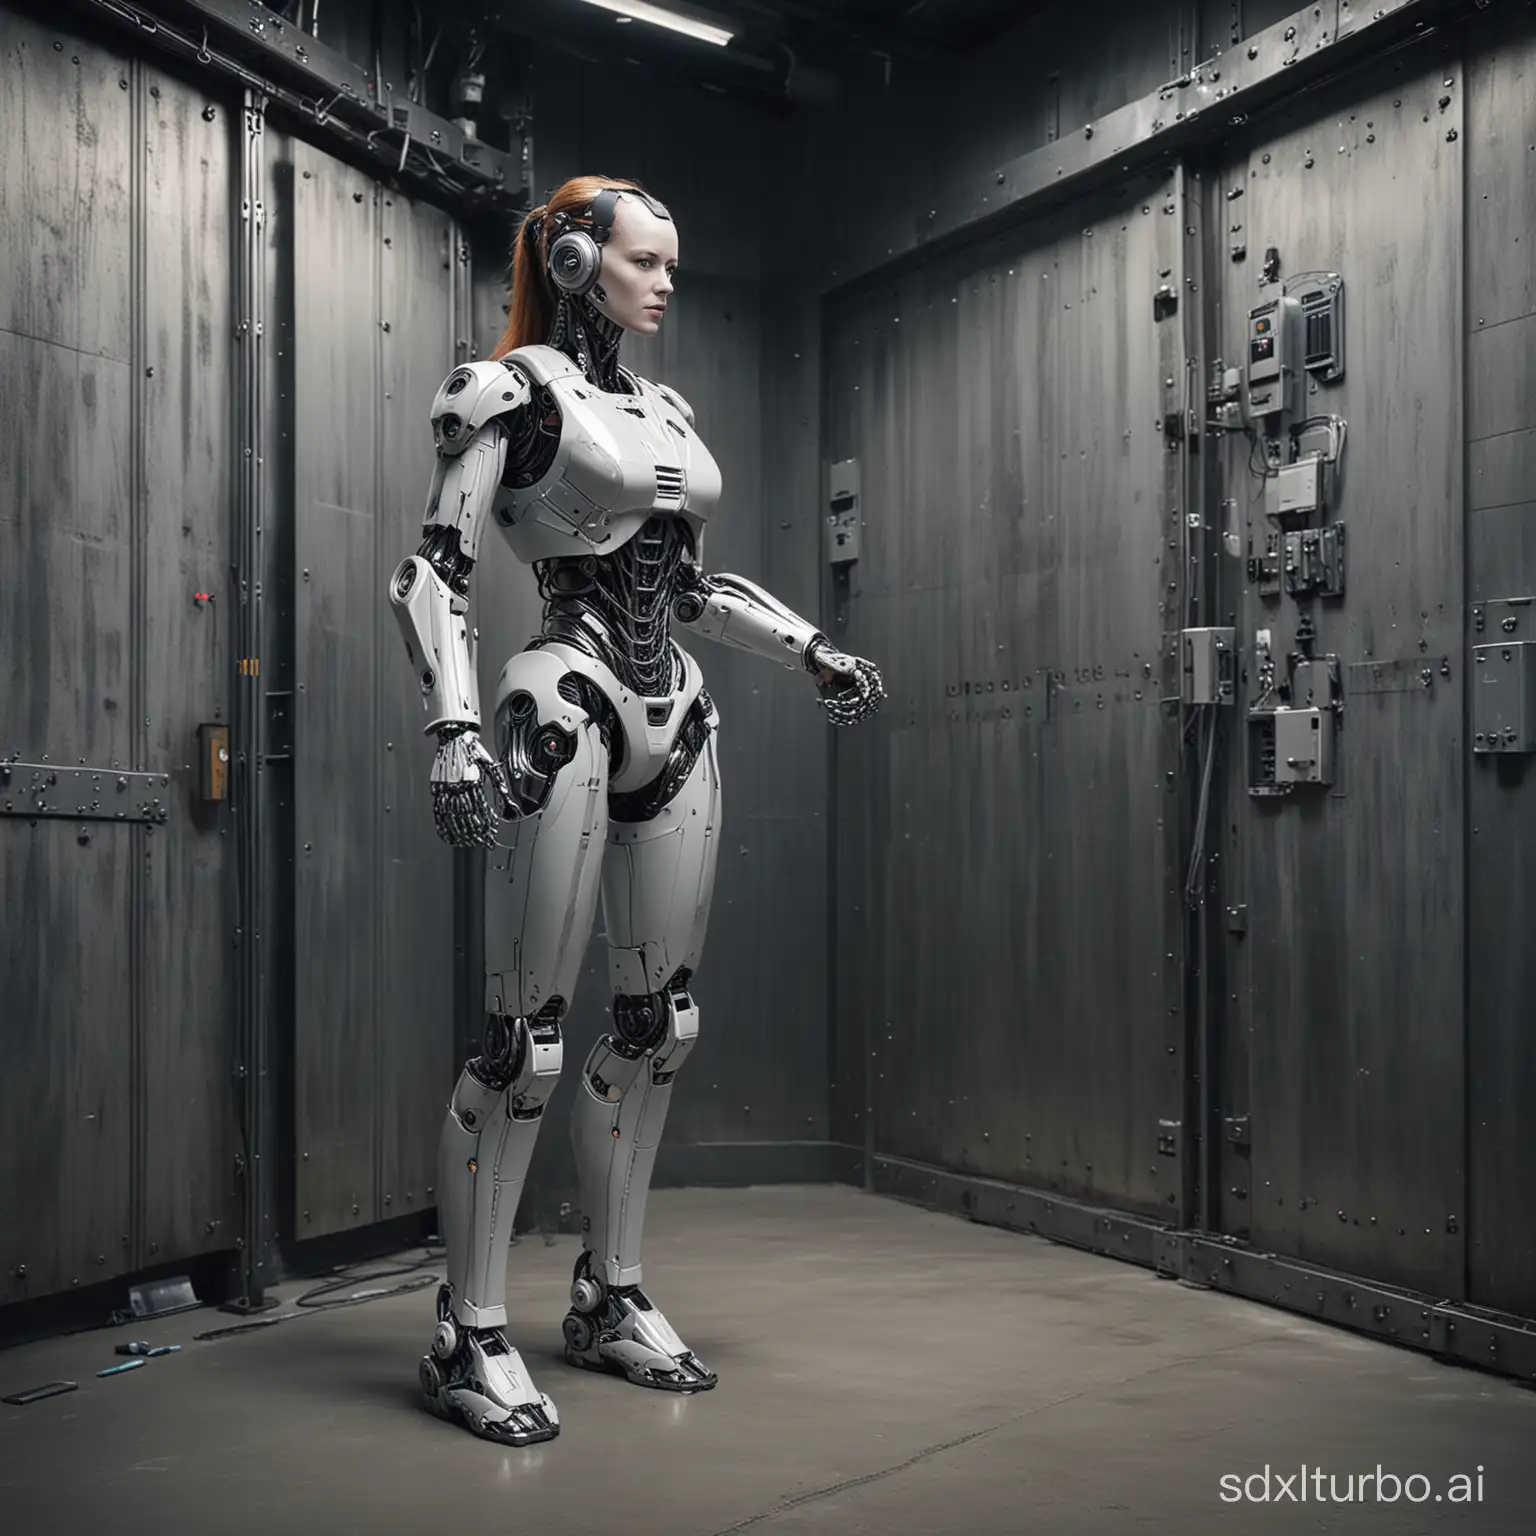 Robotic-Woman-Recharging-in-Metallic-Interior